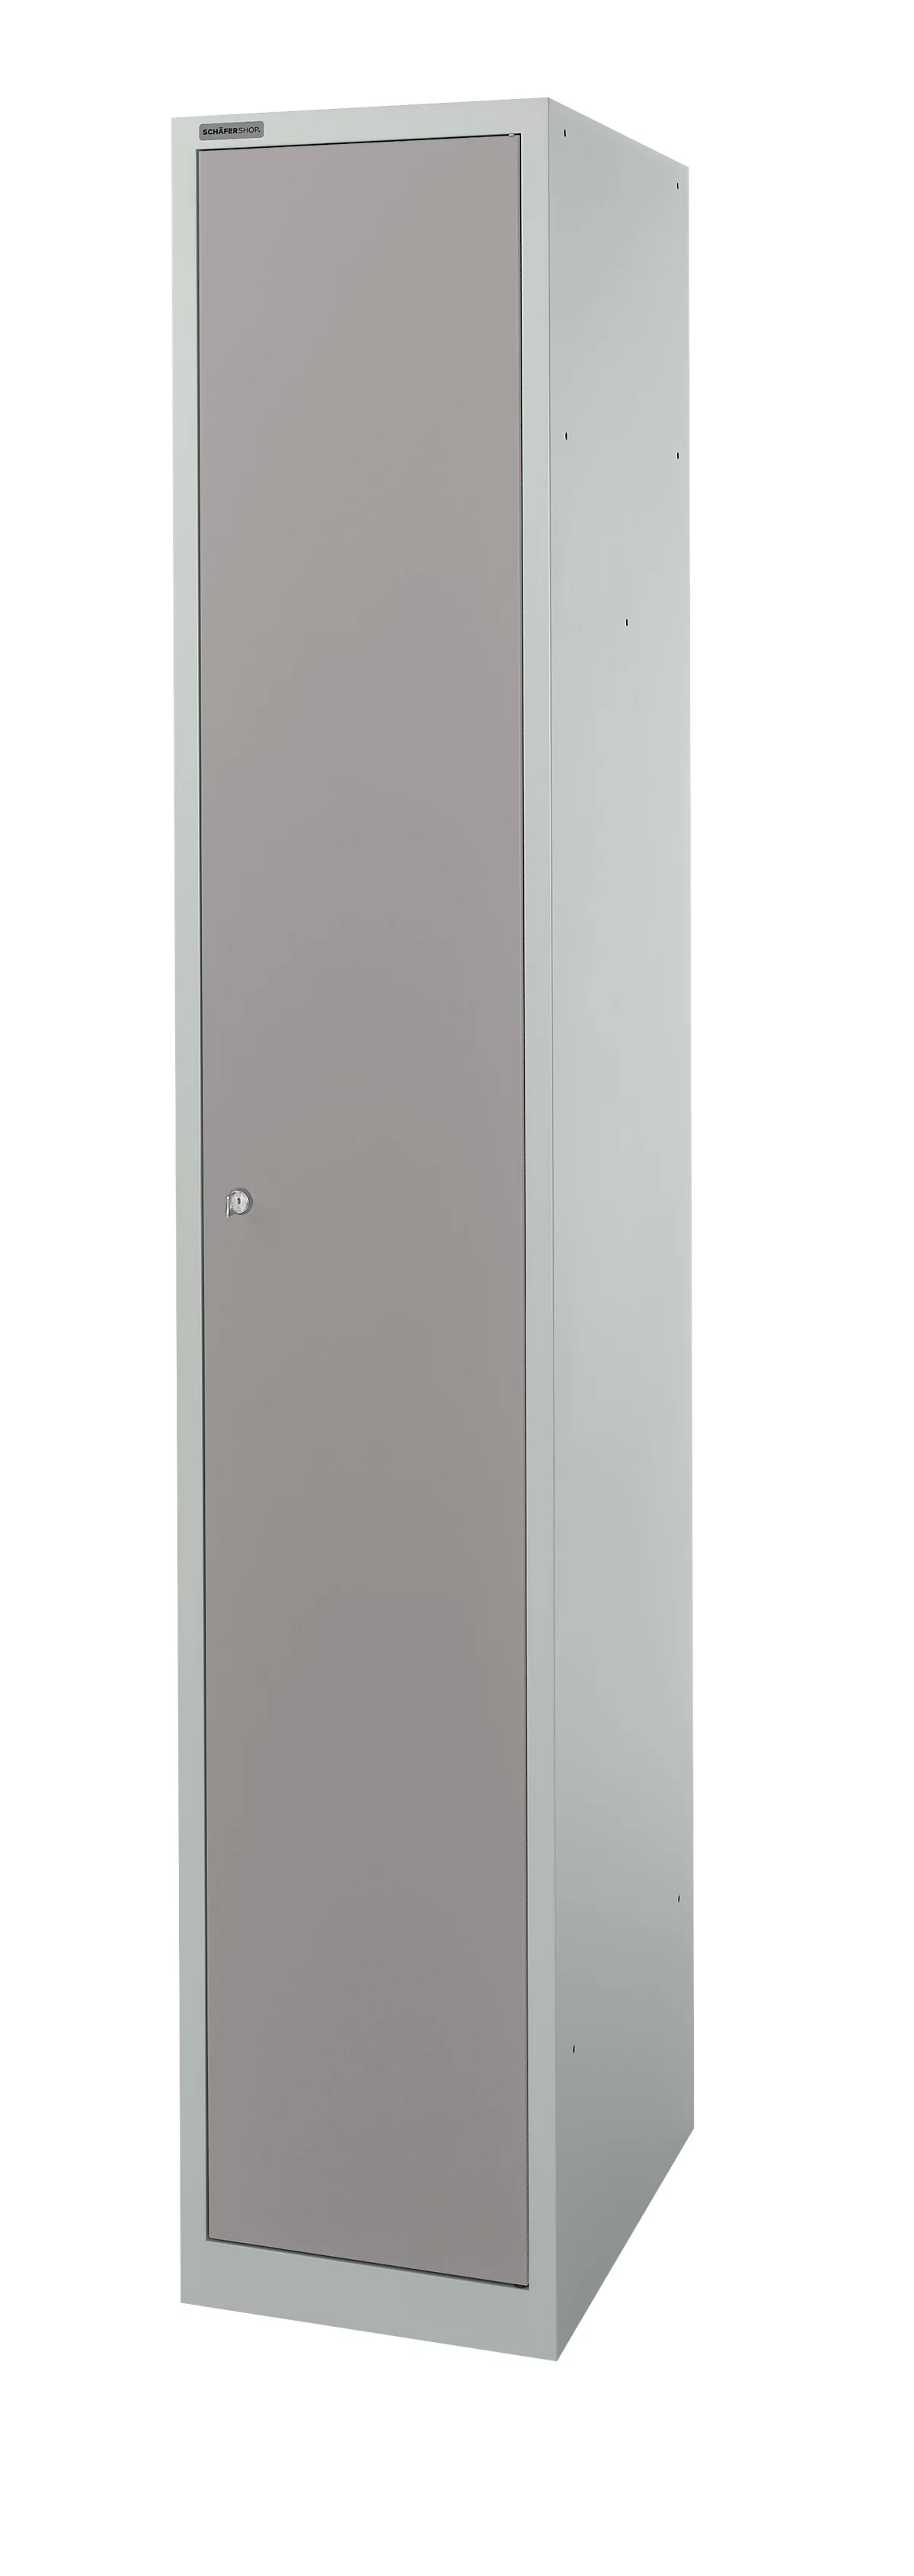 Schäfer Shop Select Armario de guardarropa, 1 compartimento de 350 mm de ancho, 5 compartimentos con 4 estantes, con cerradura, gris claro/gris platino